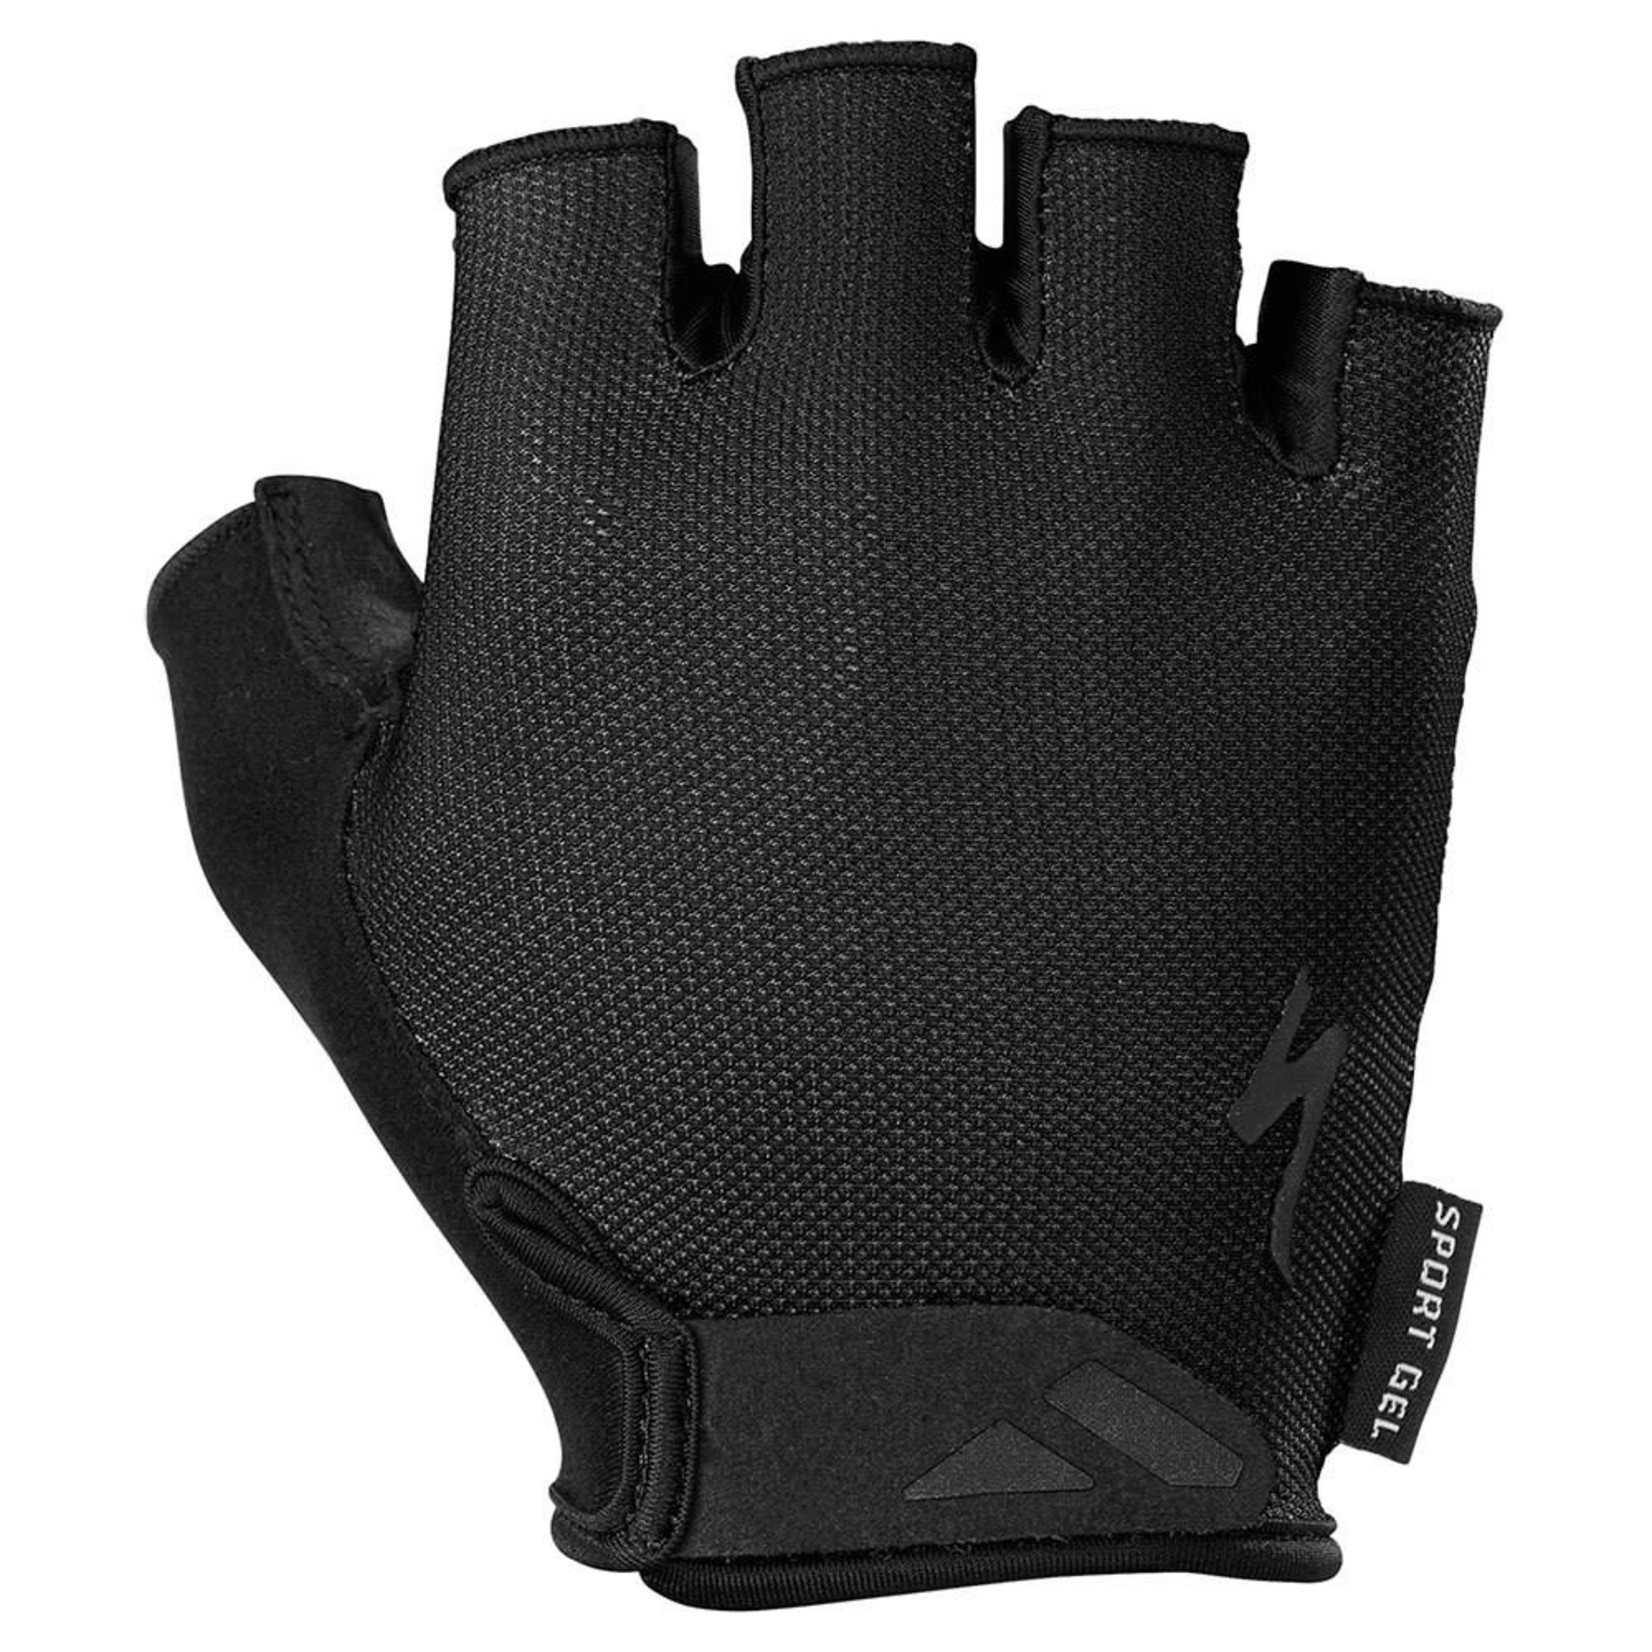 Specialized BG Sport Gel Glove